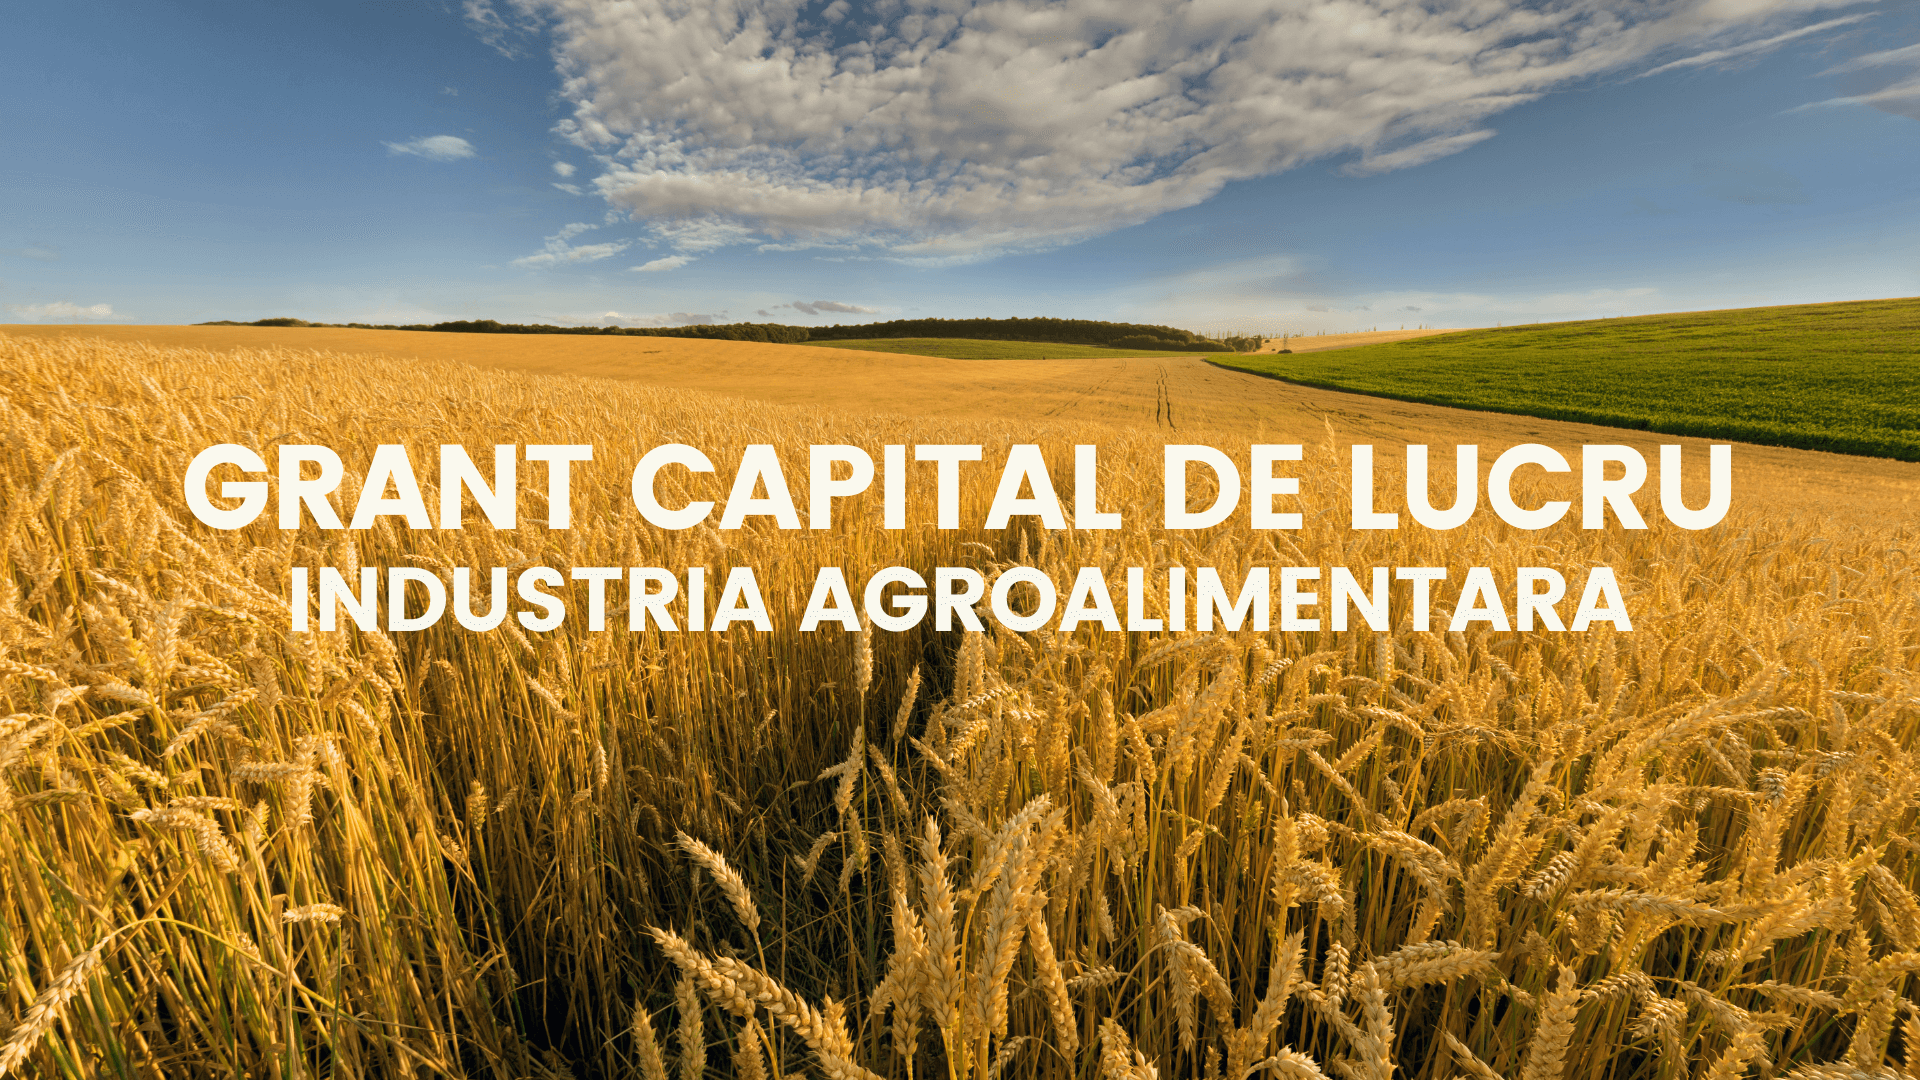 Grant capital de lucru pentru industria agroalimentara